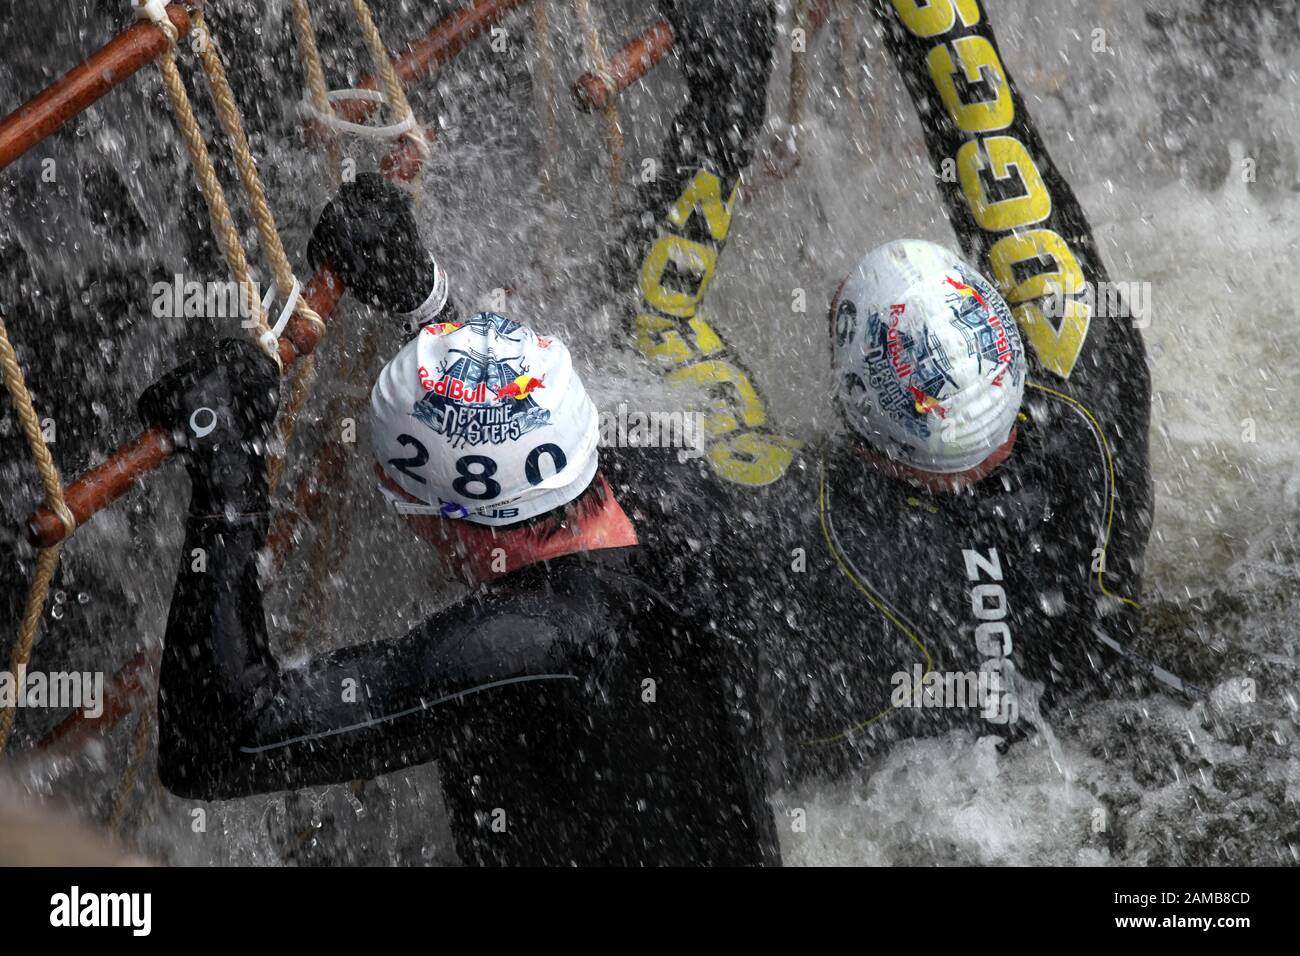 Zwei Konkurrenten erklimmen eine der Schleusen während der Veranstaltung "Red Bull neptune Steps", die in maryhill Locks in glasgow stattfindet Stockfoto